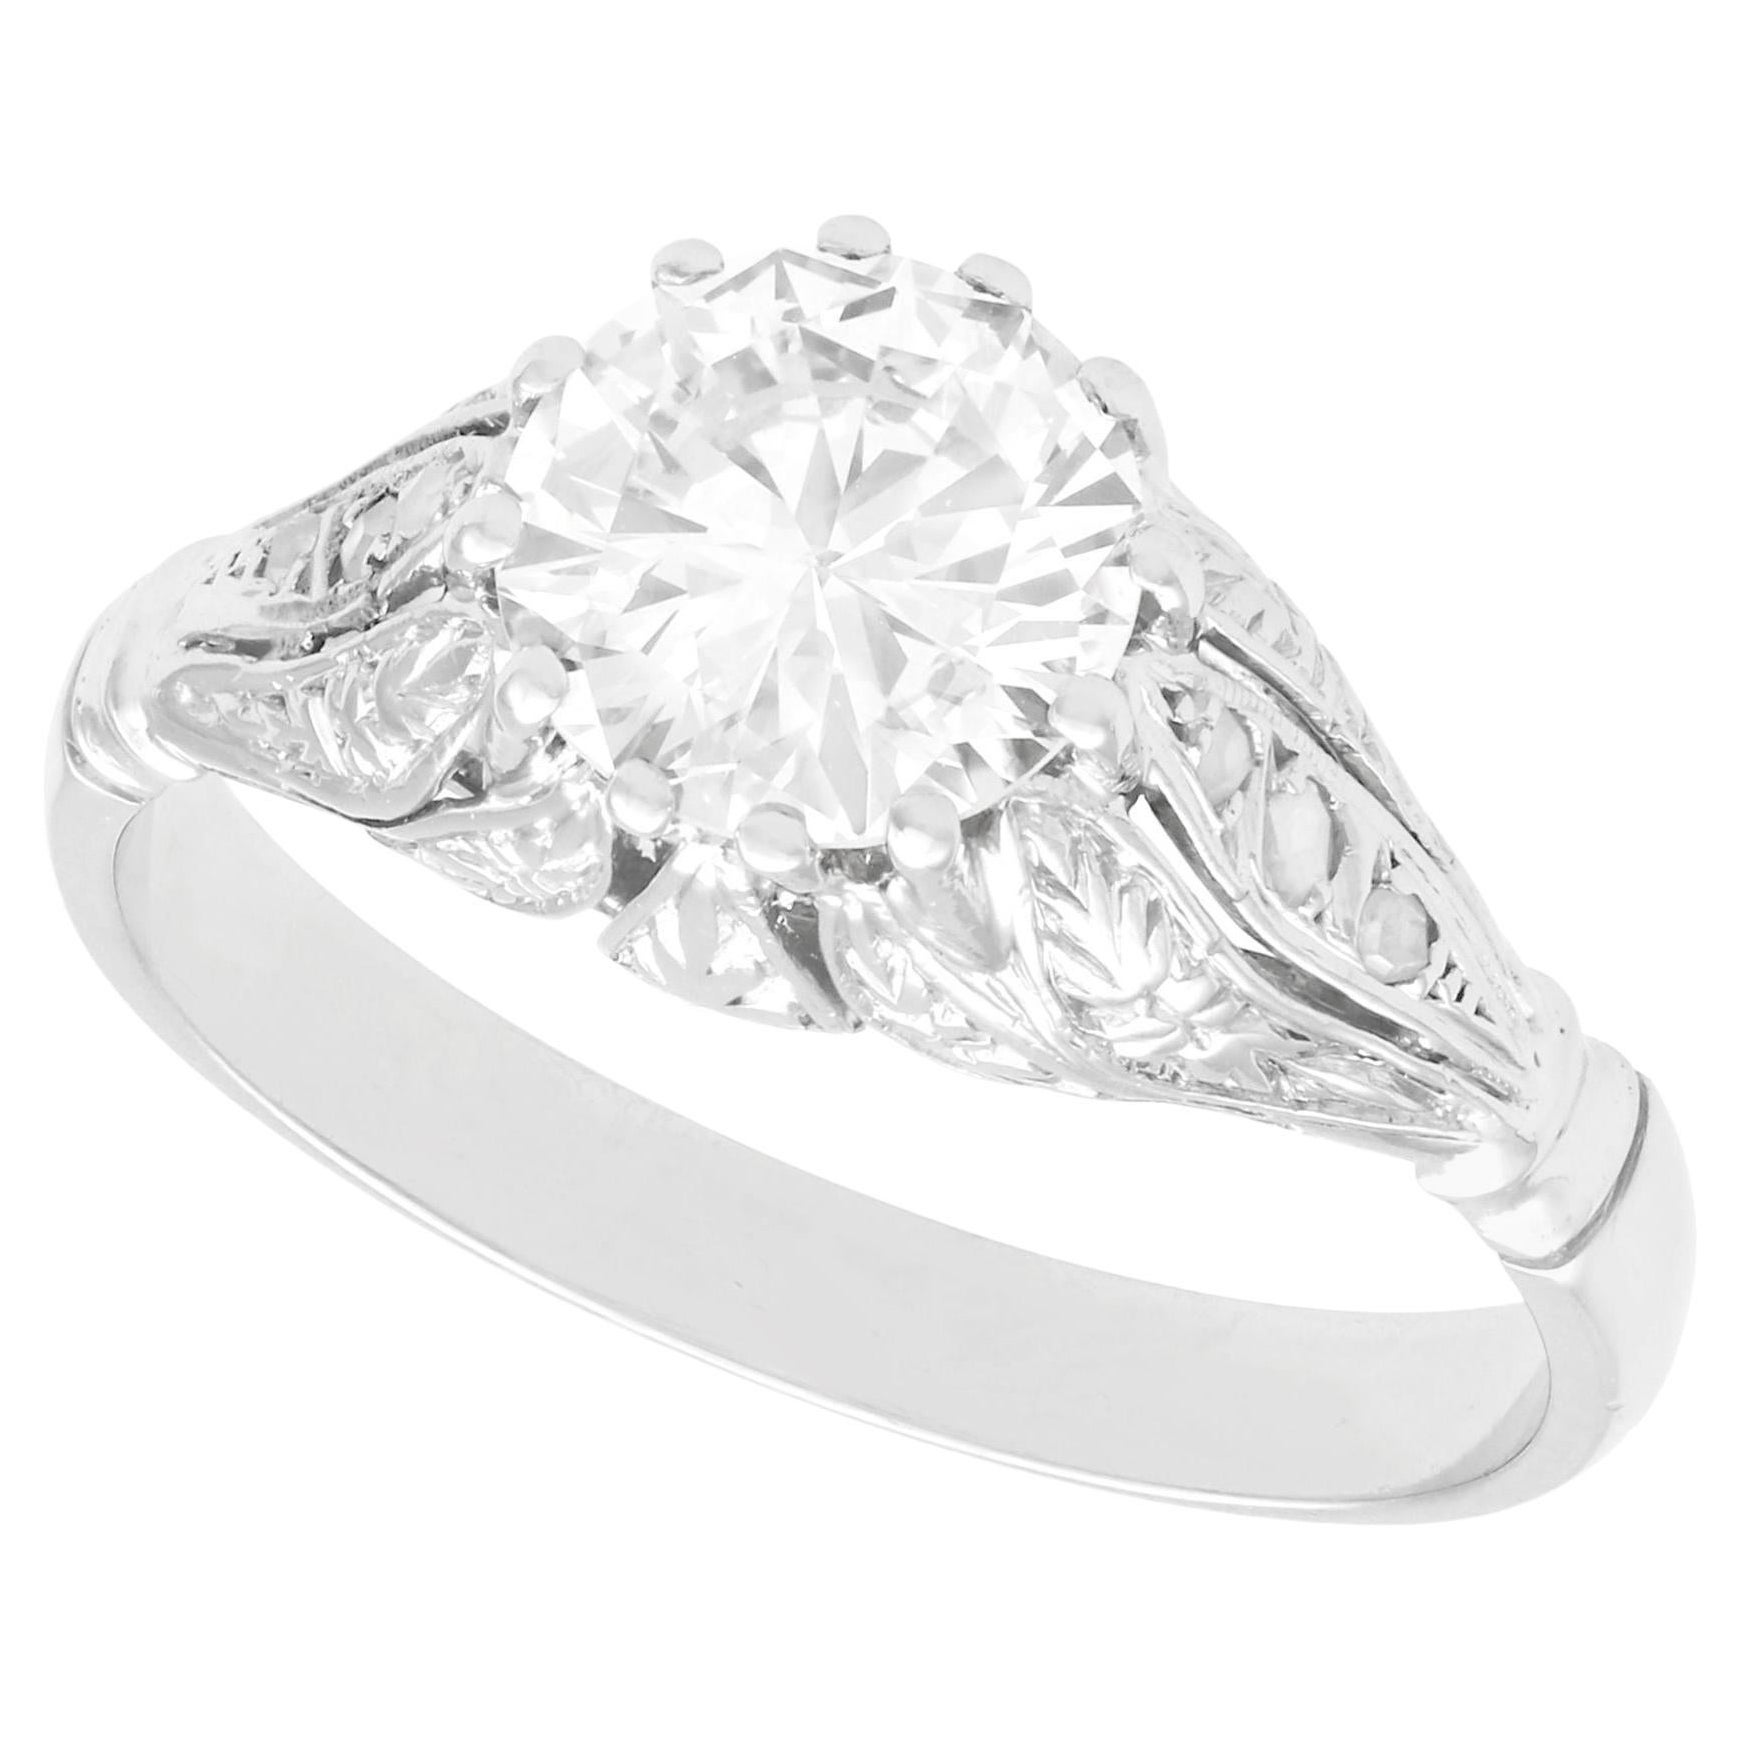 1.74 Carat Diamond Solitaire Engagement Ring in Platinum